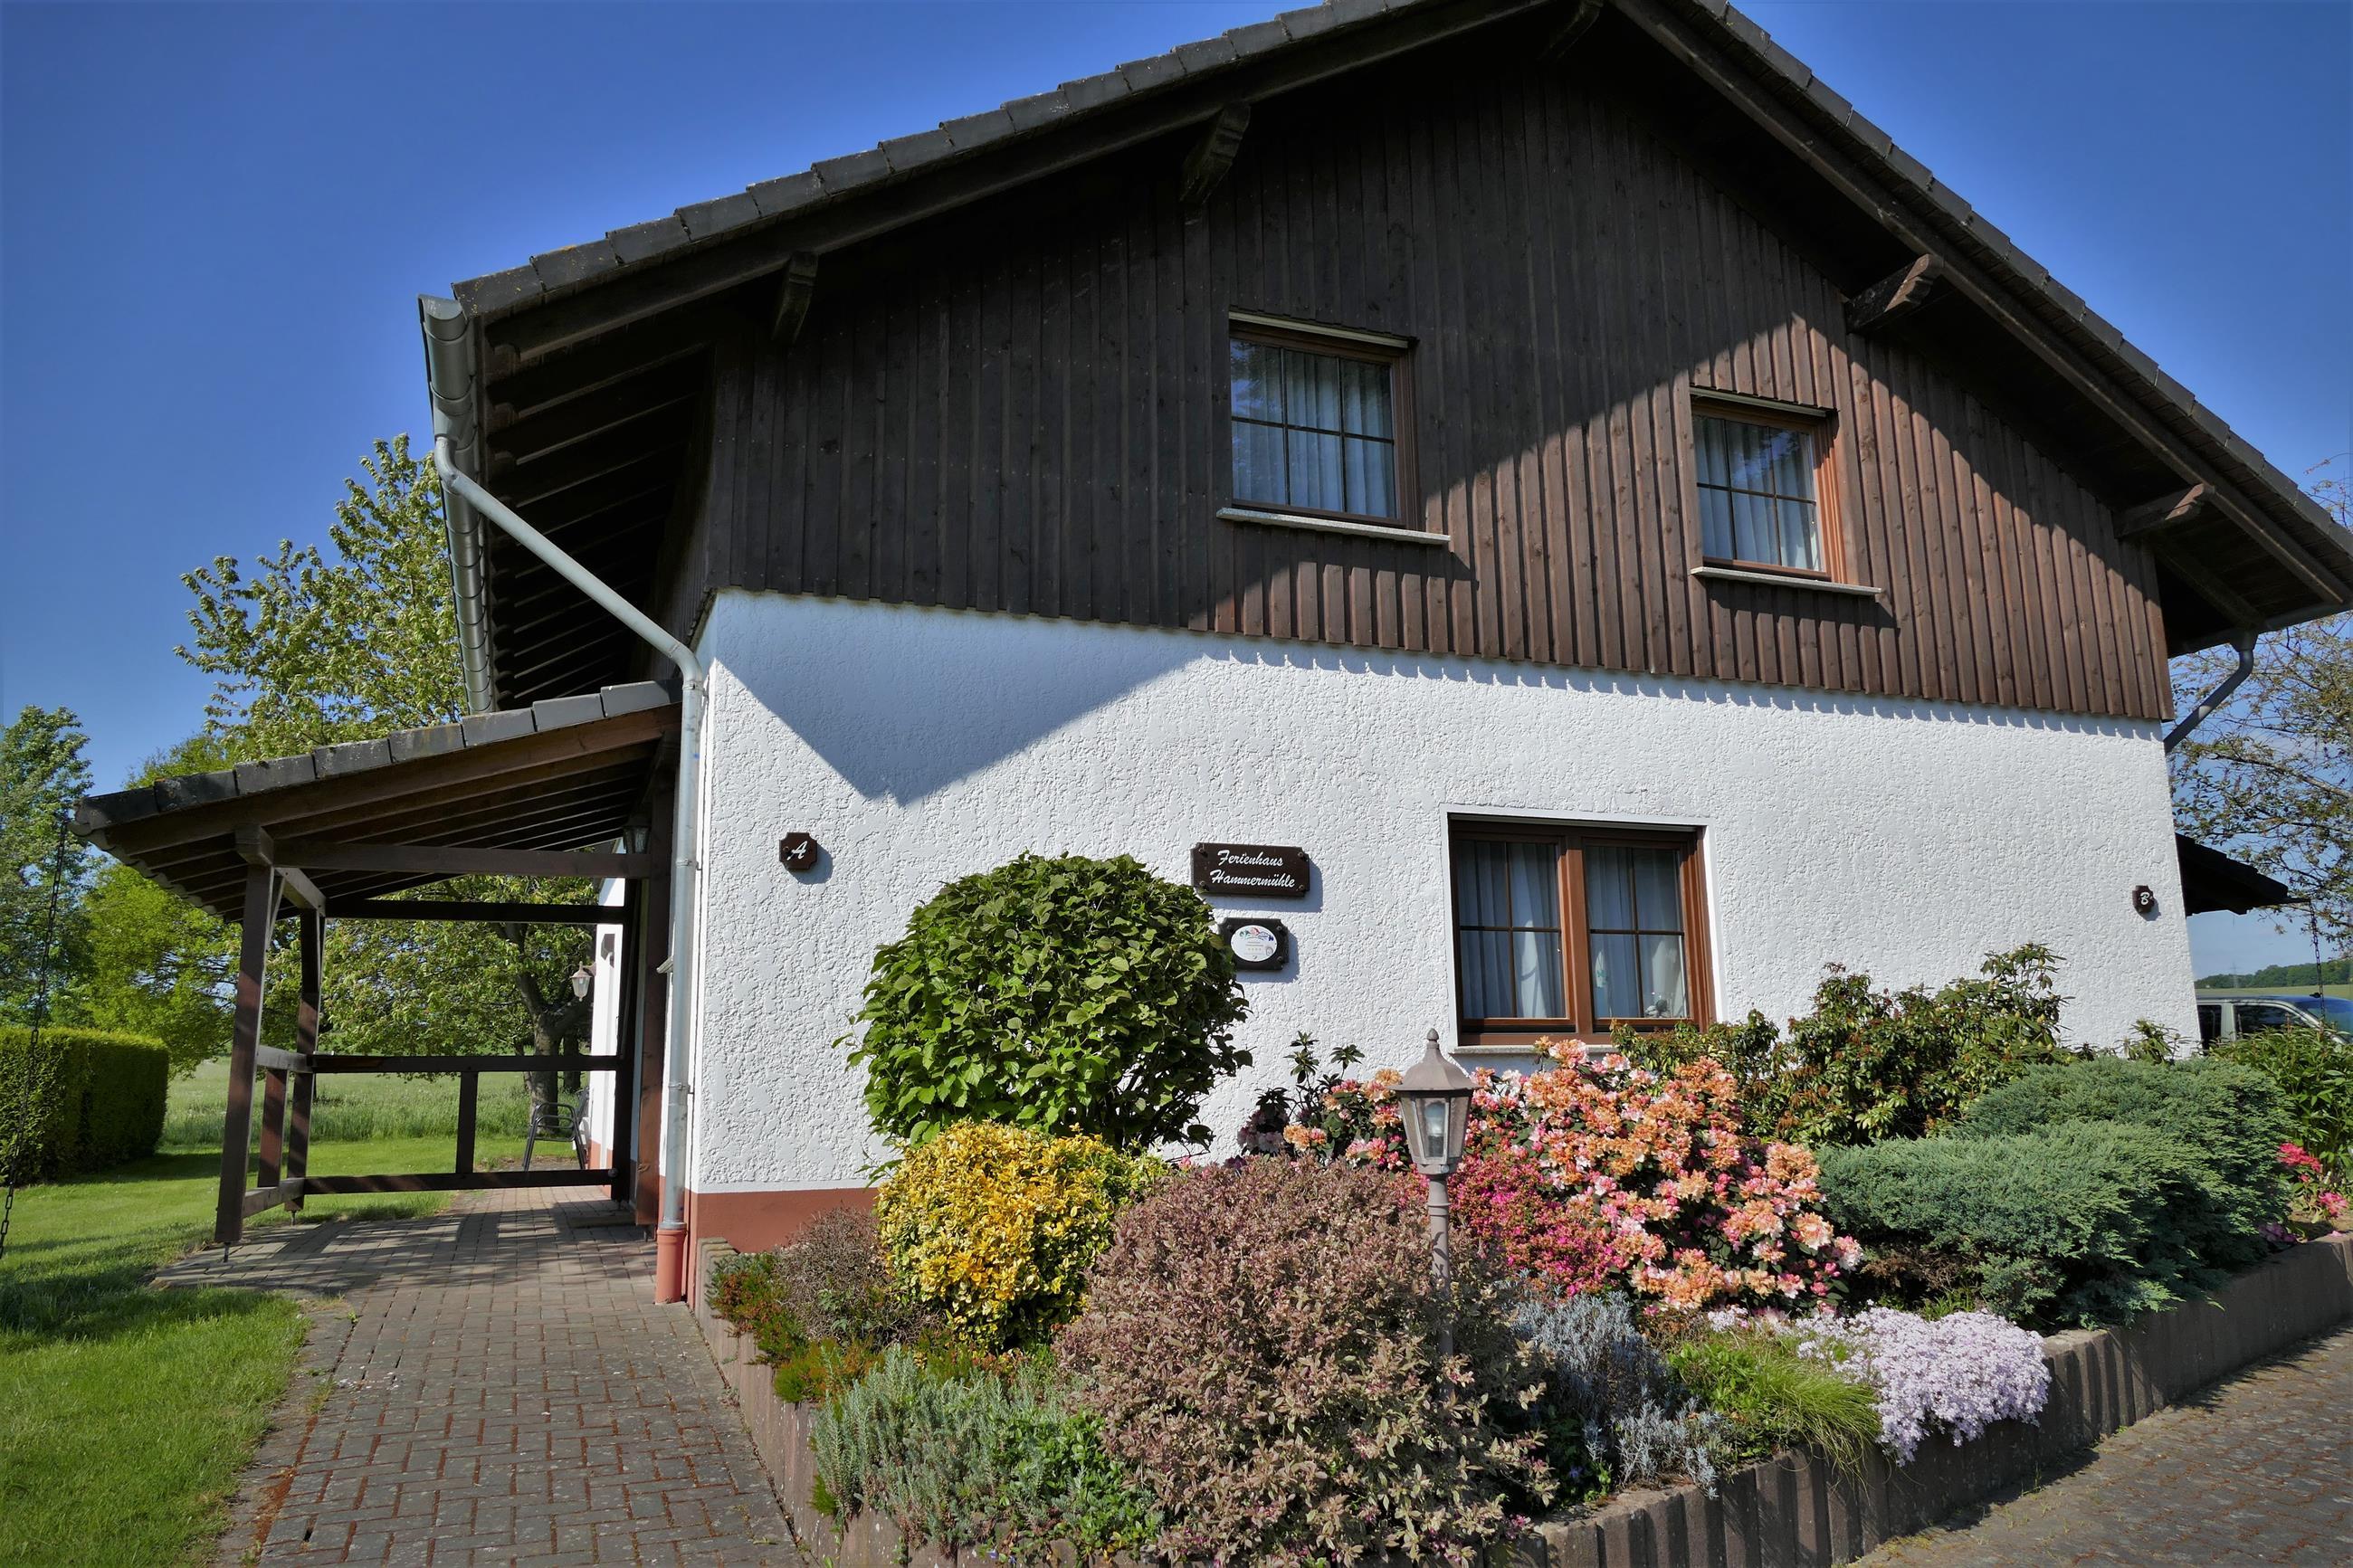 Ferienwohnungen Hammermühle Ferienhaus, Wohnu Ferienwohnung in Deutschland